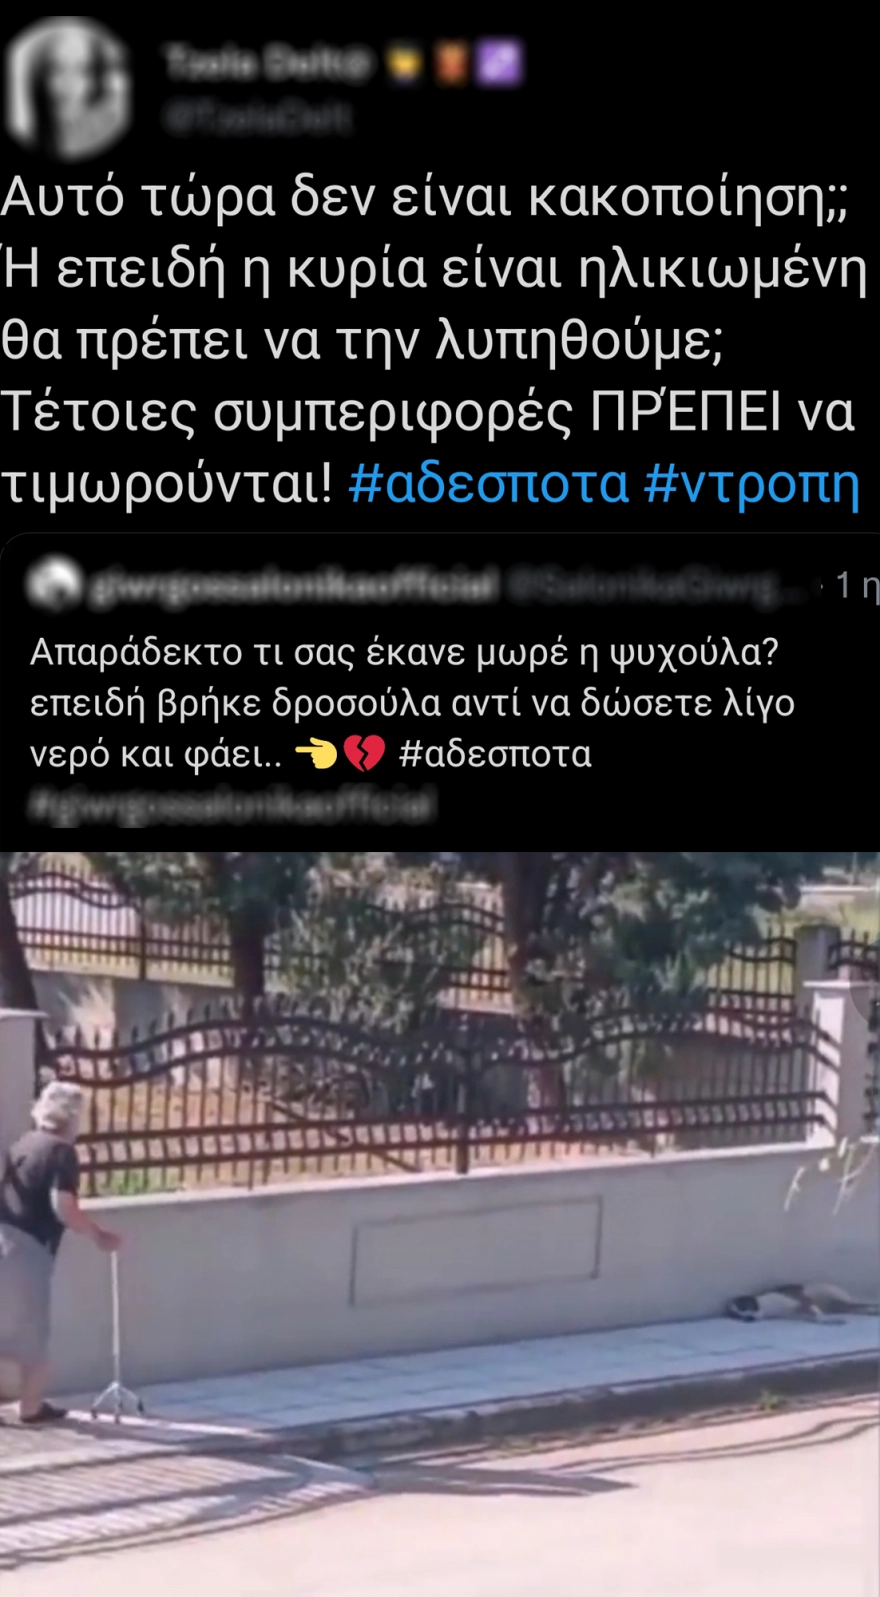 Θεσσαλονίκη: 75χρονη πέταξε μπαστούνι σε σκυλί - Σχηματίστηκε δικογραφία ΒΙΝΤΕΟ